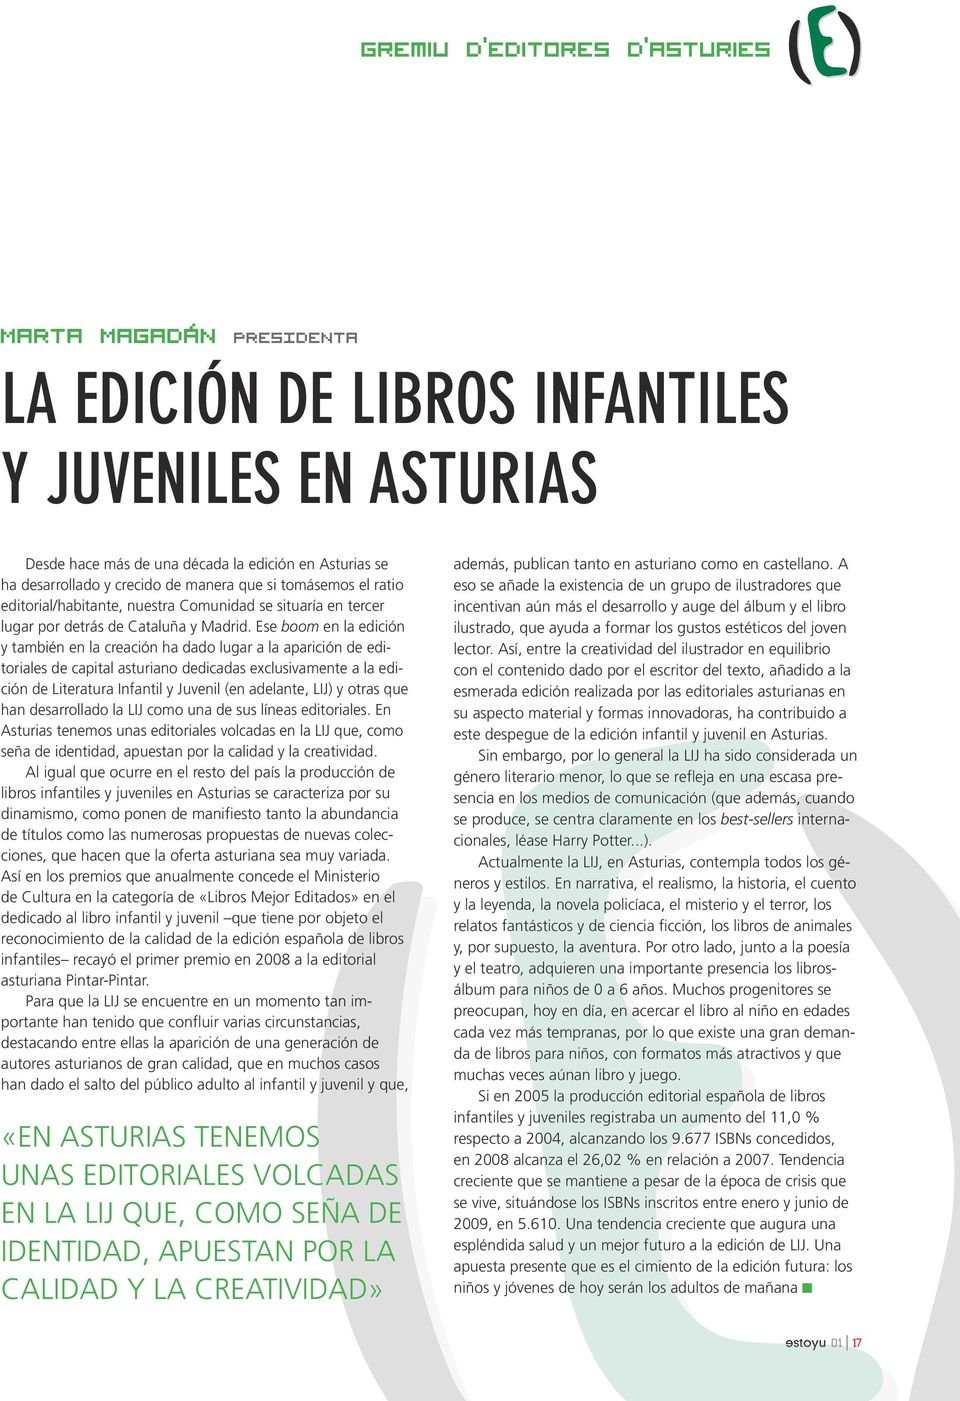 Ese boom en la edición y también en la creación ha dado lugar a la aparición de editoriales de capital asturiano dedicadas exclusivamente a la edición de Literatura Infantil y Juvenil (en adelante,